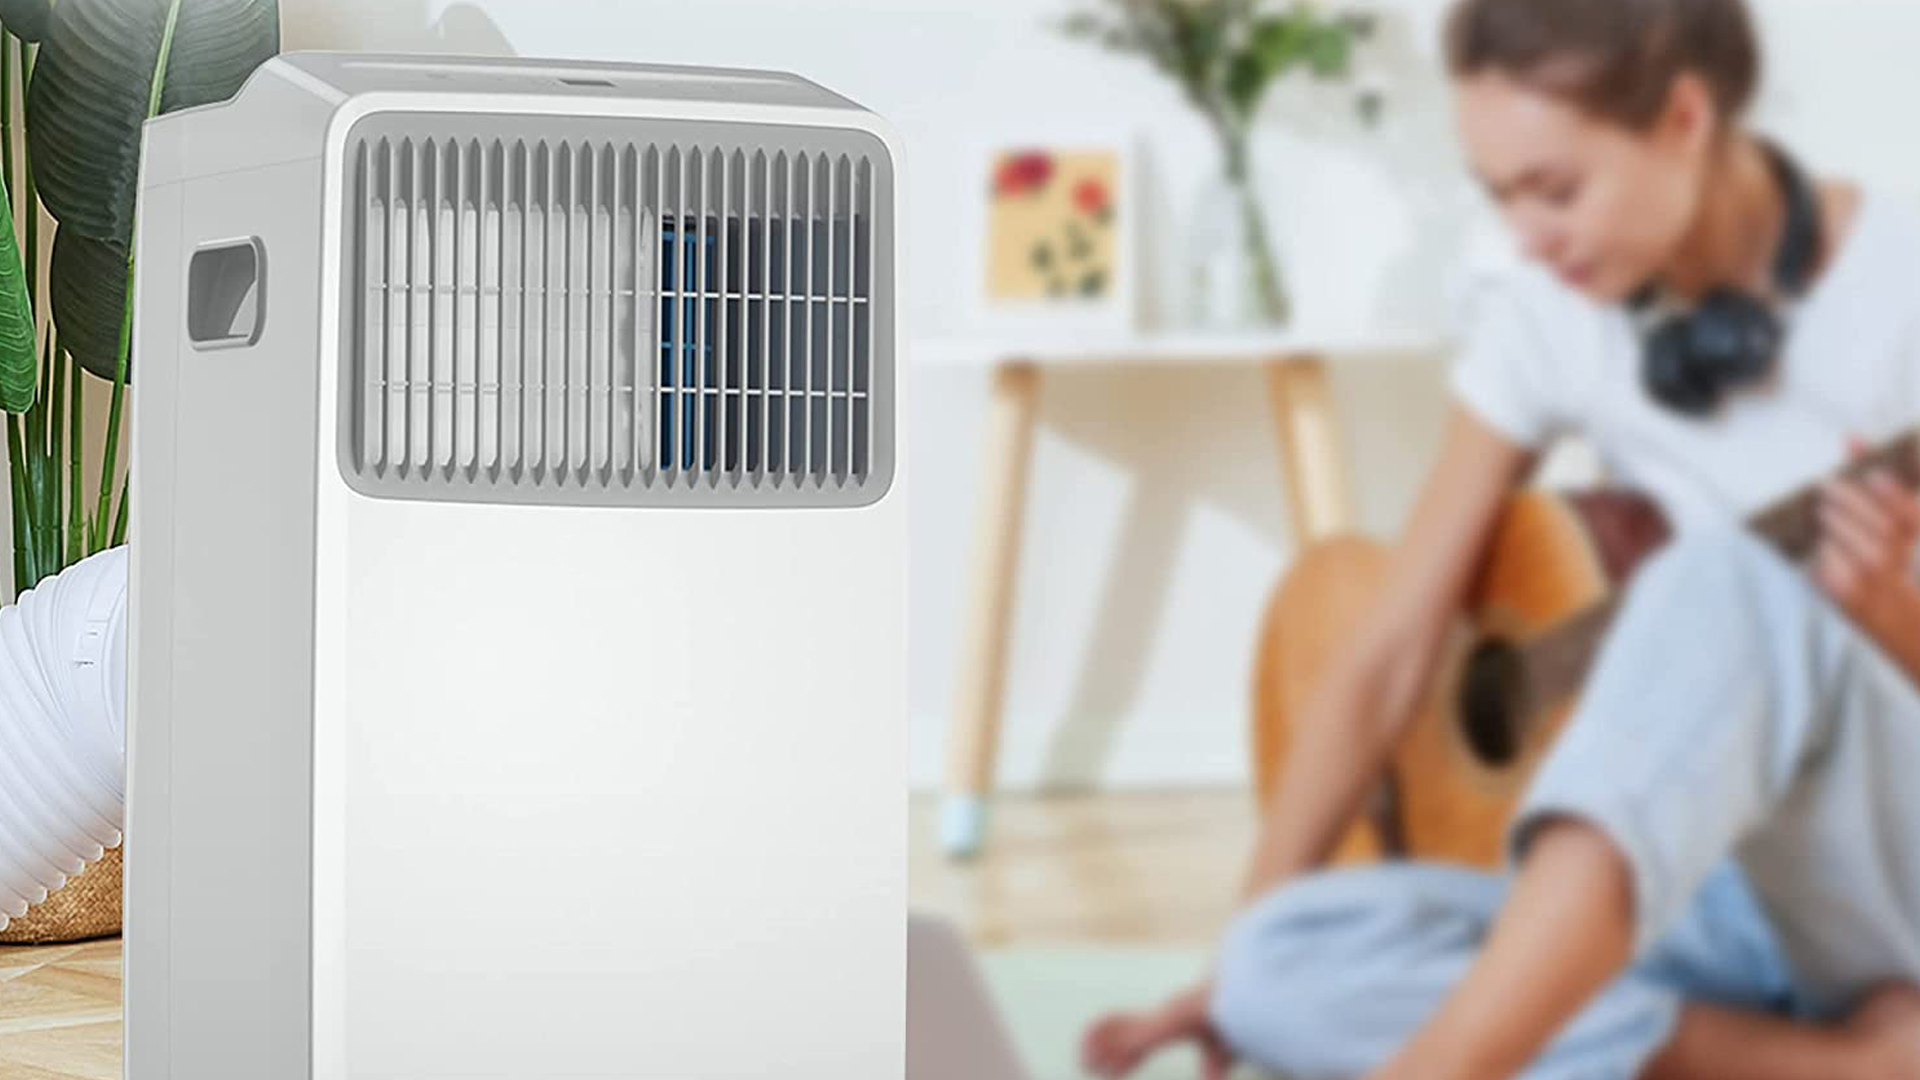 Comprar aire acondicionado portátil barato: ¿cómo elegir?